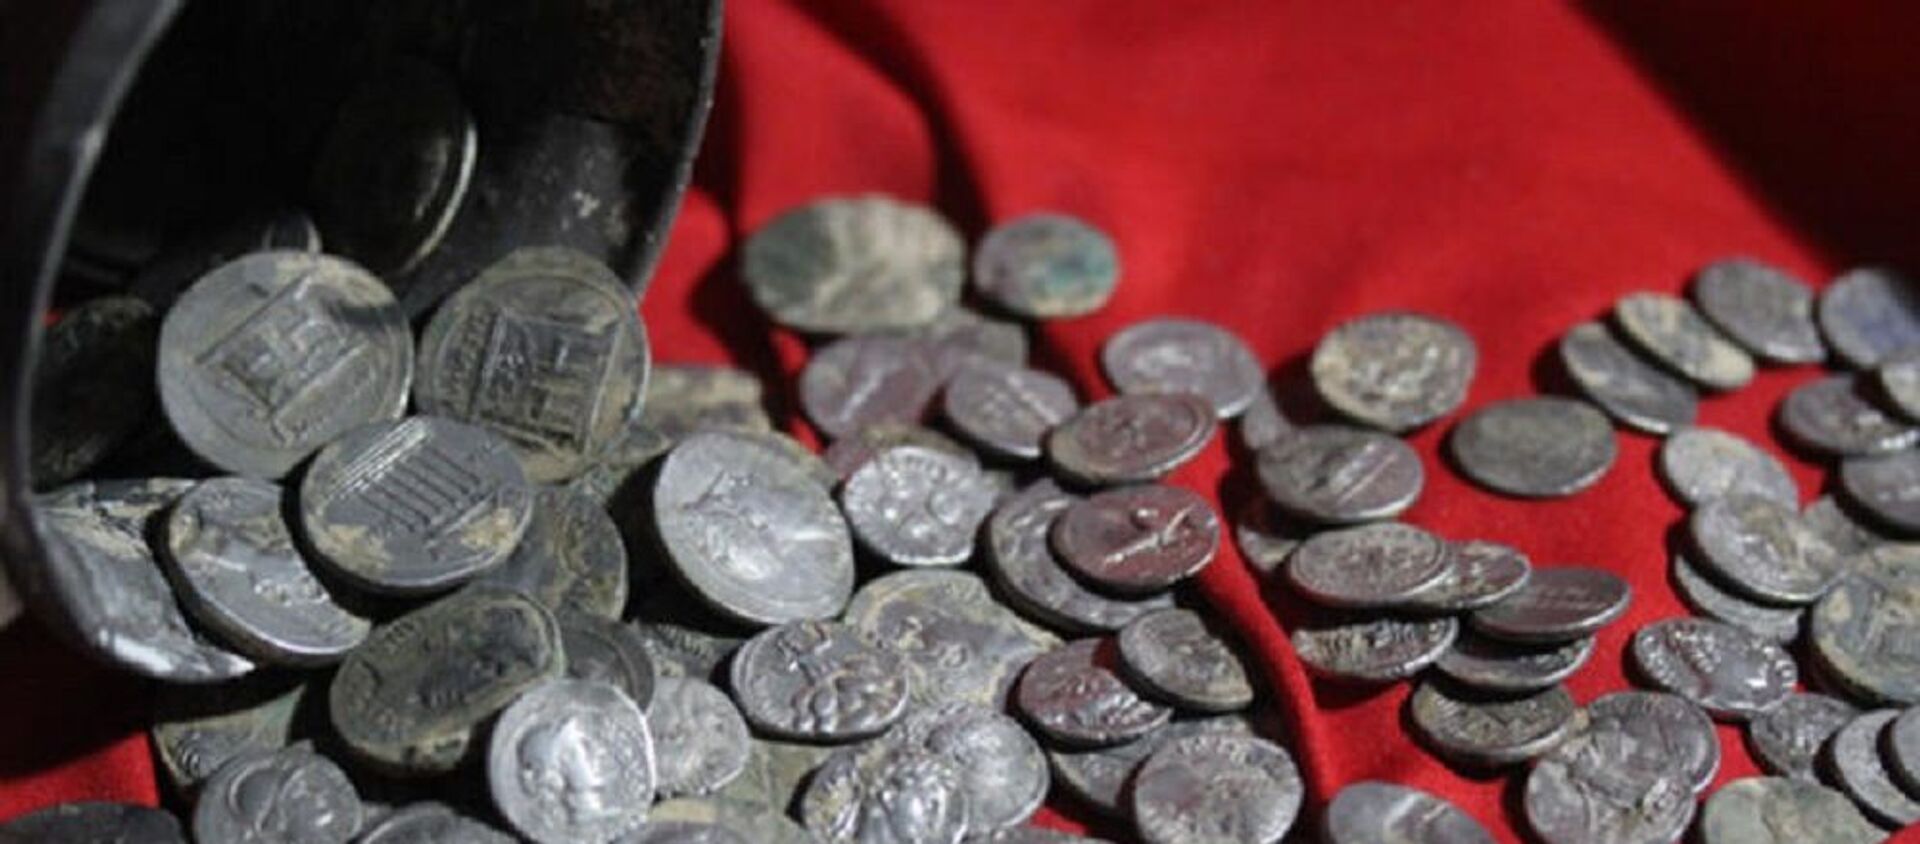 Kütahya'da bulunan 651 gümüş sikke Anadolu Medeniyetleri Müzesi'nde sergilenmeye başlandı - Sputnik Türkiye, 1920, 09.03.2021